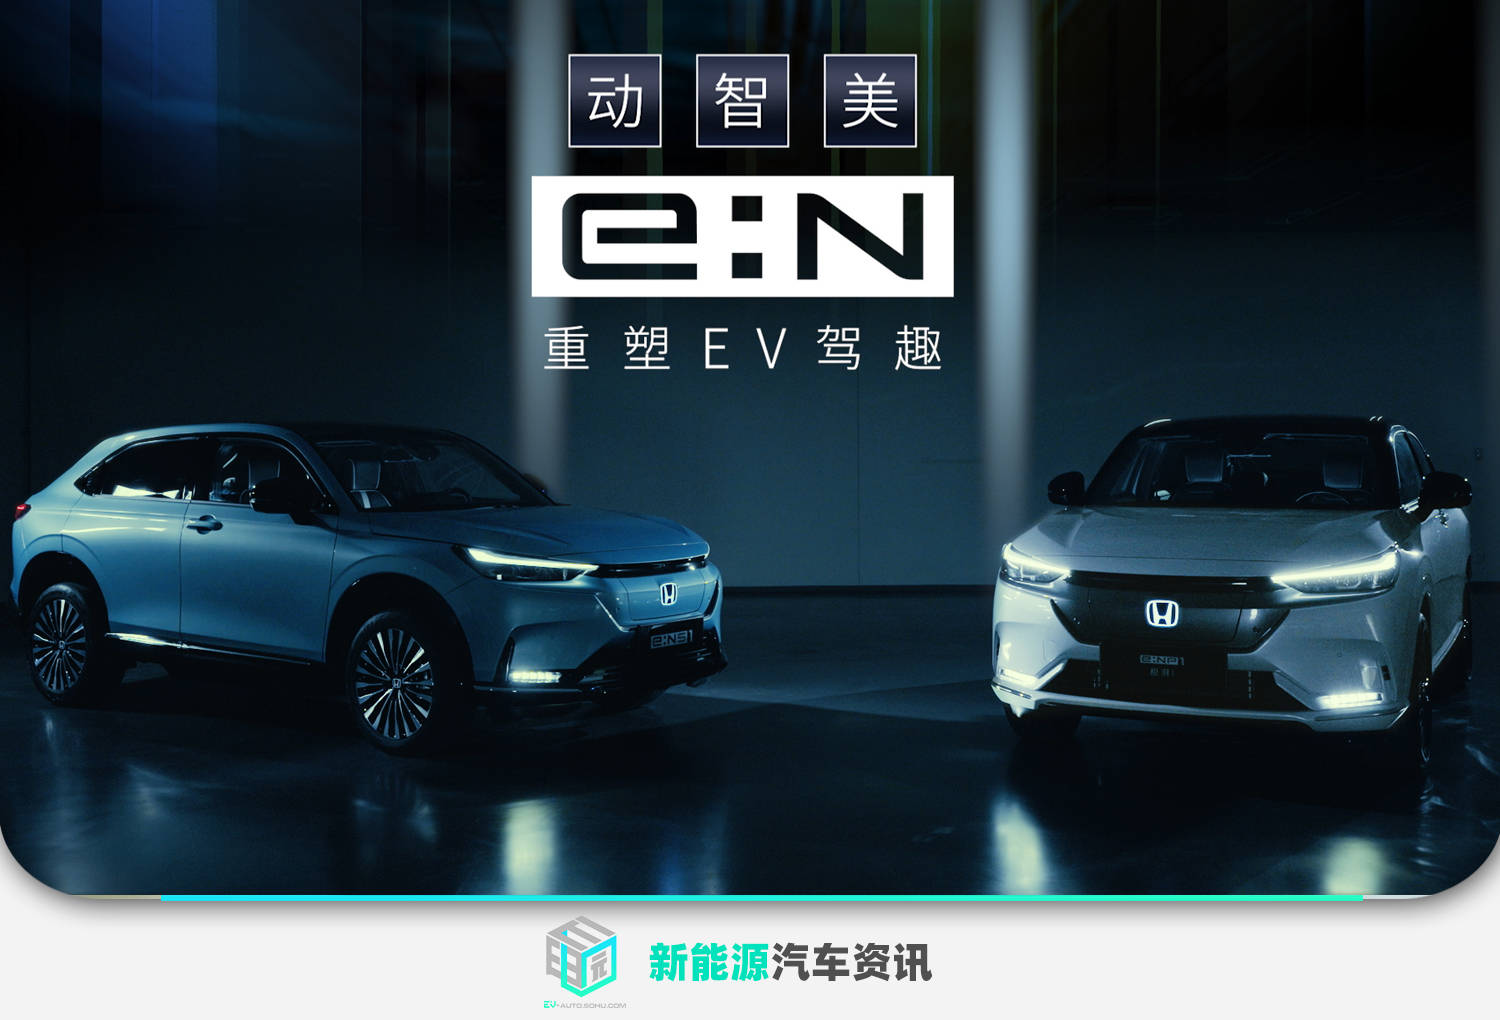 本田发布全新 E N品牌宣言 4月26日上市首款纯电动suv 新快网